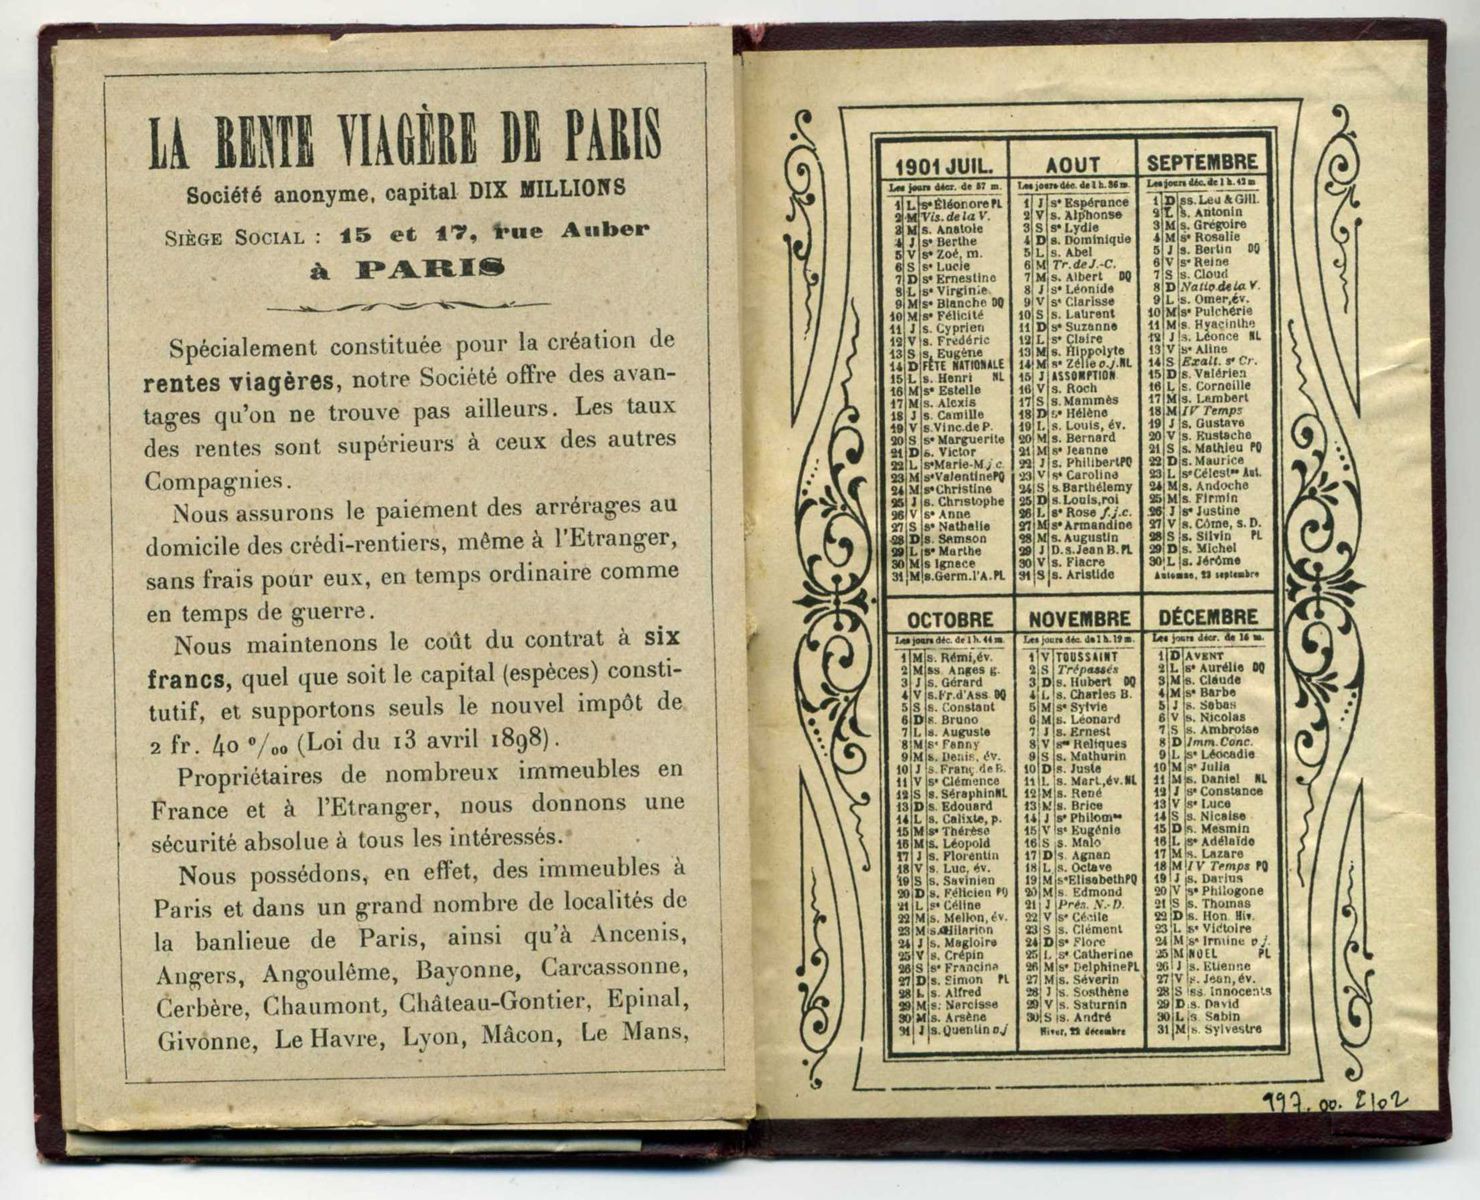 Almanach illustré de la rente viagère de Paris